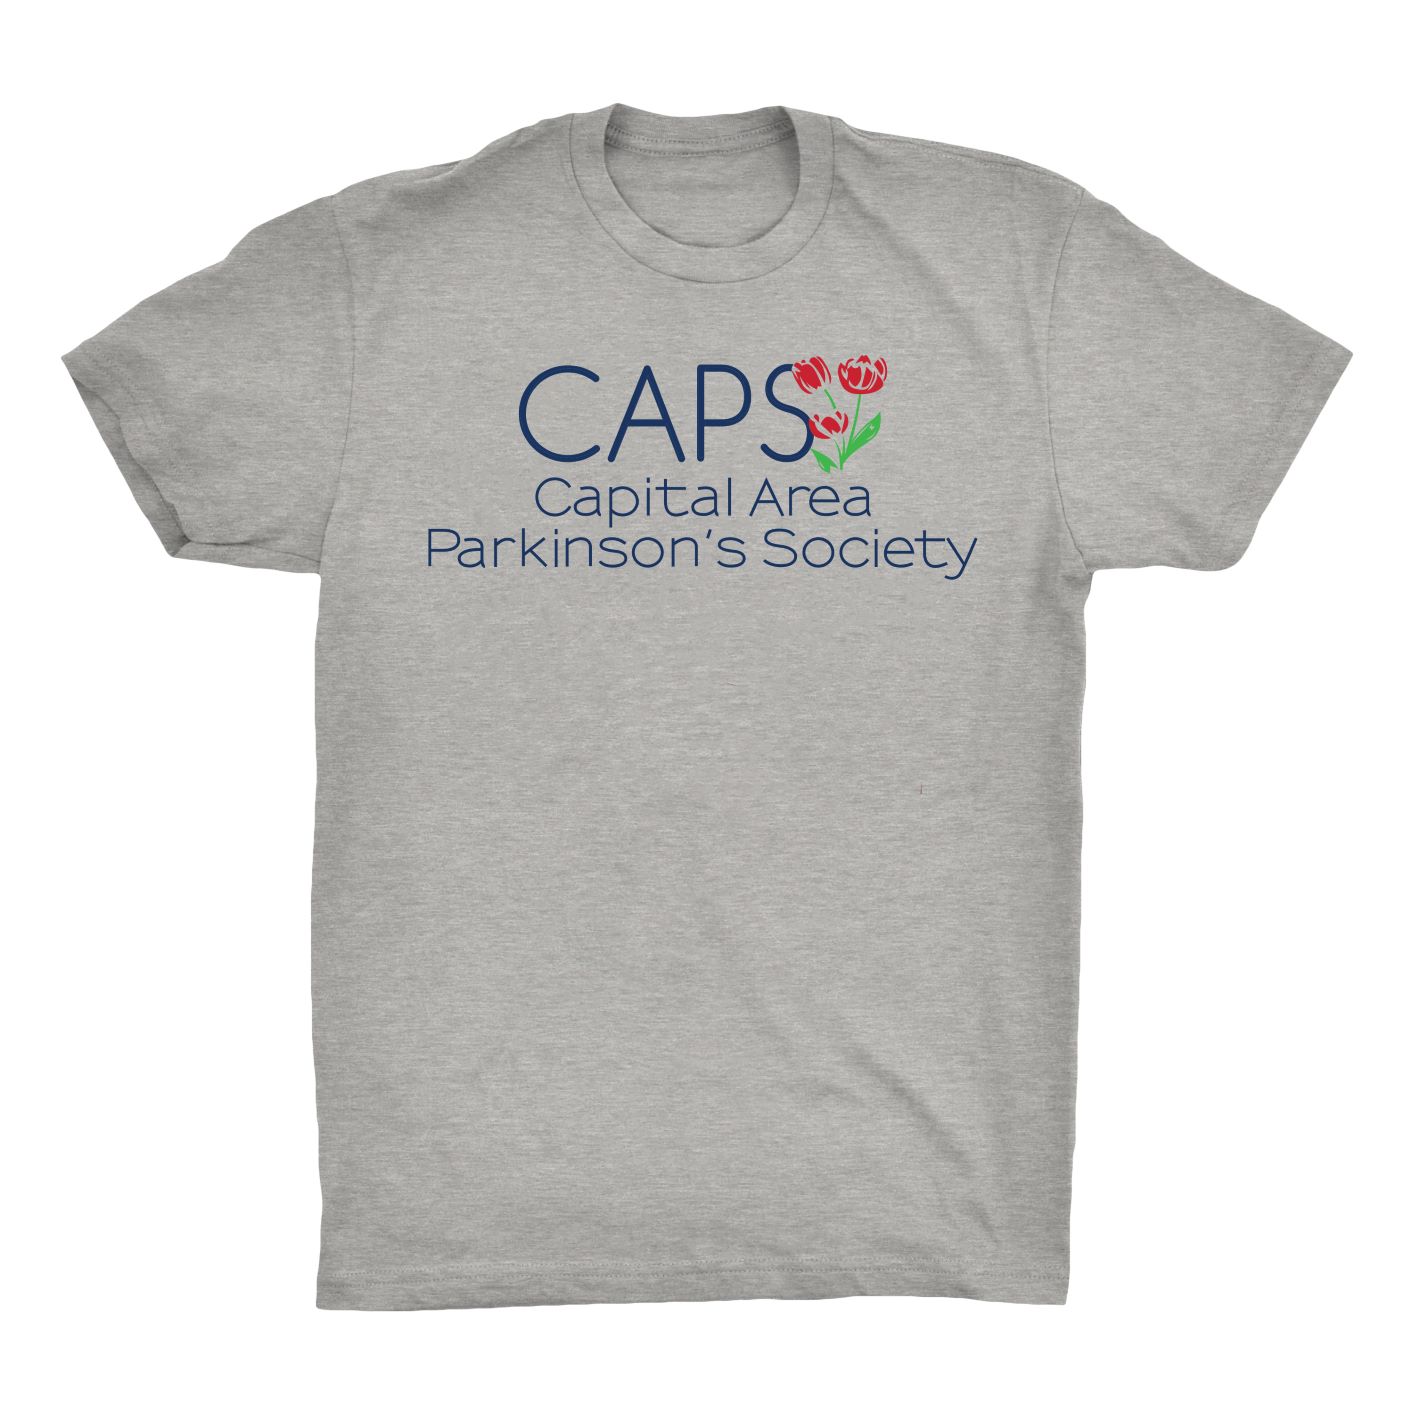 CAPS t shirt